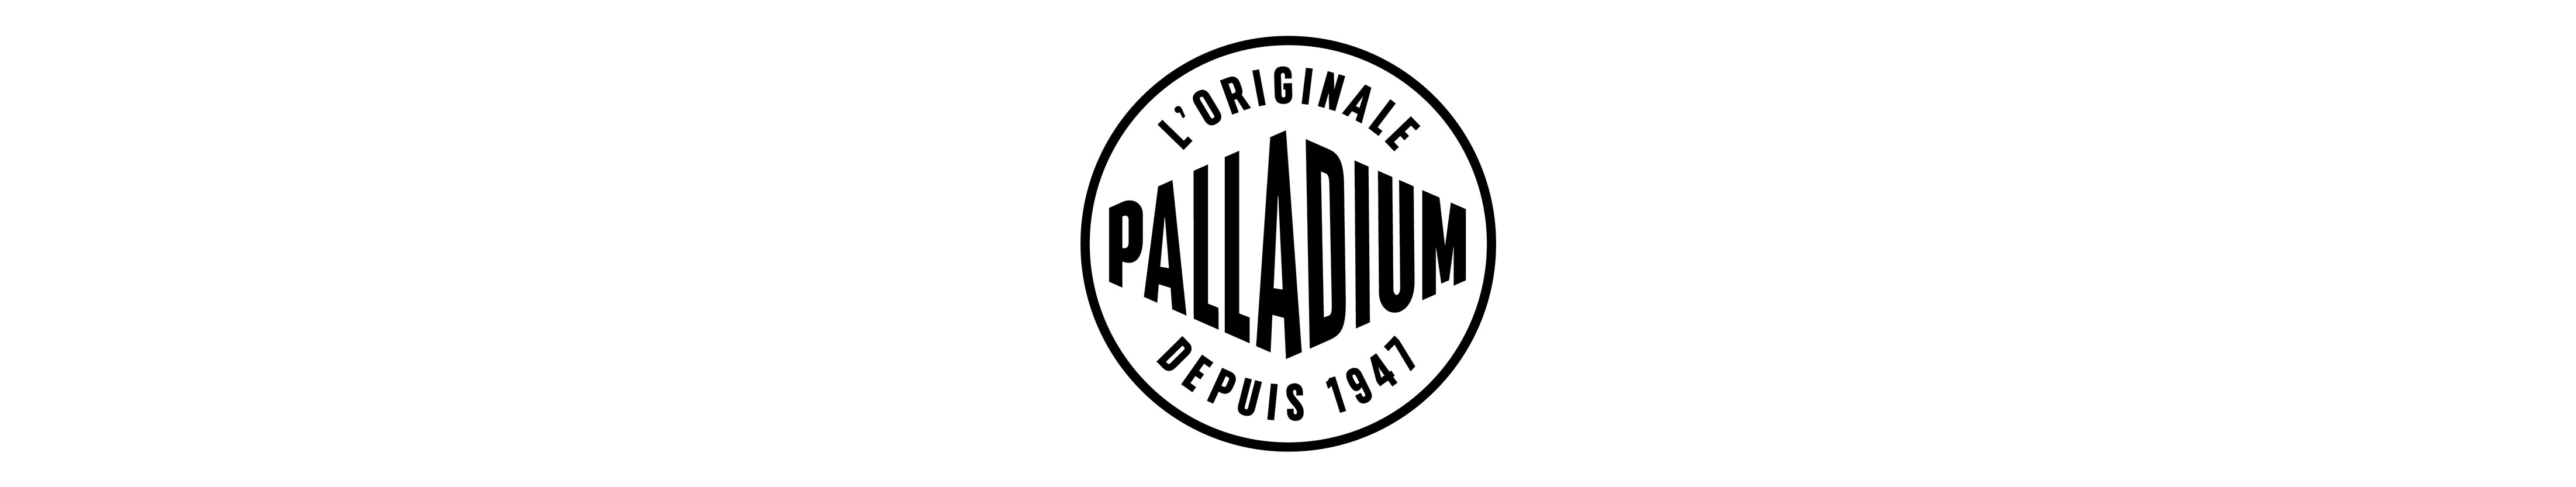 Palladium header image